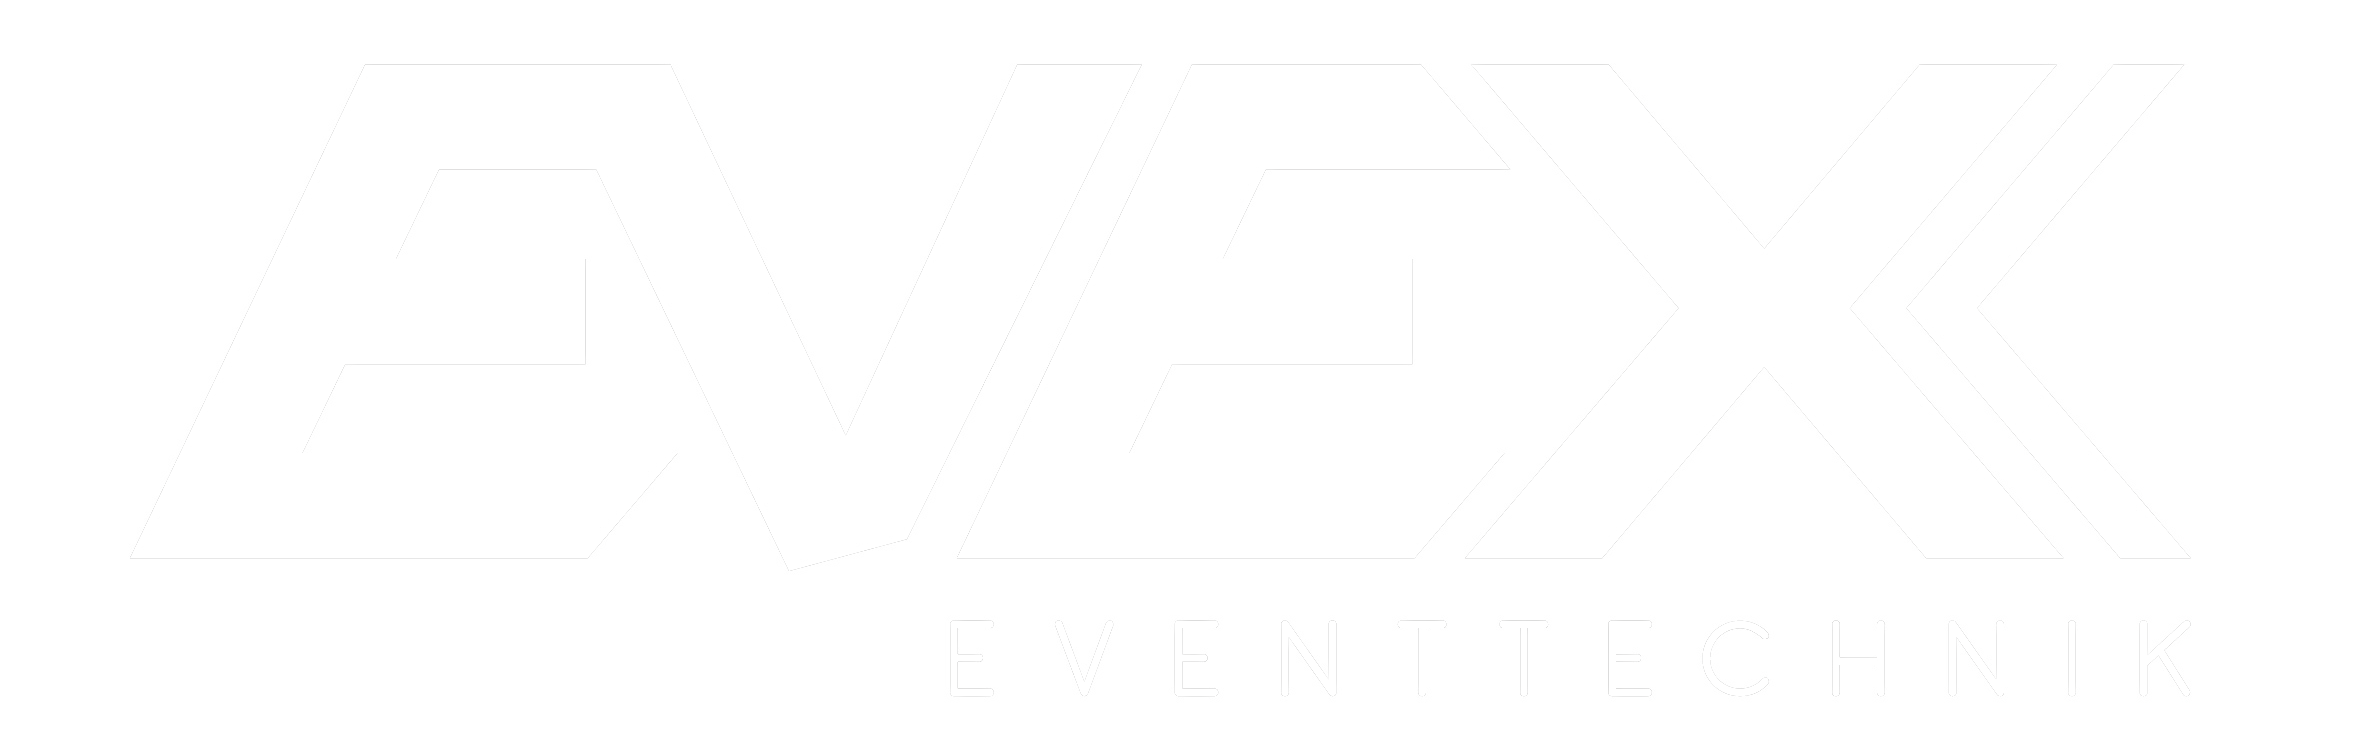 Evex – Eventtechnik